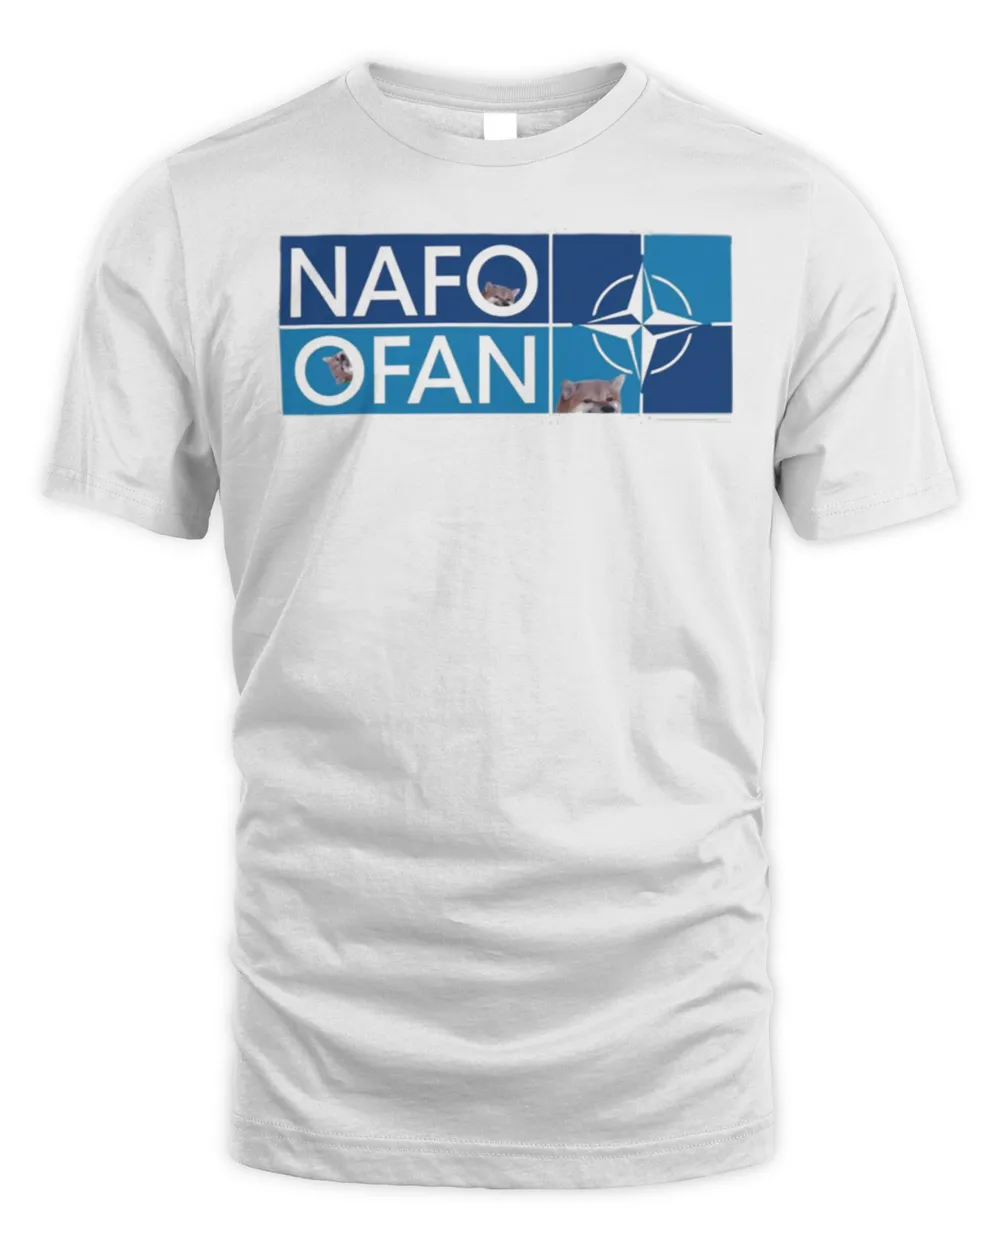 Nafo ofan shirt